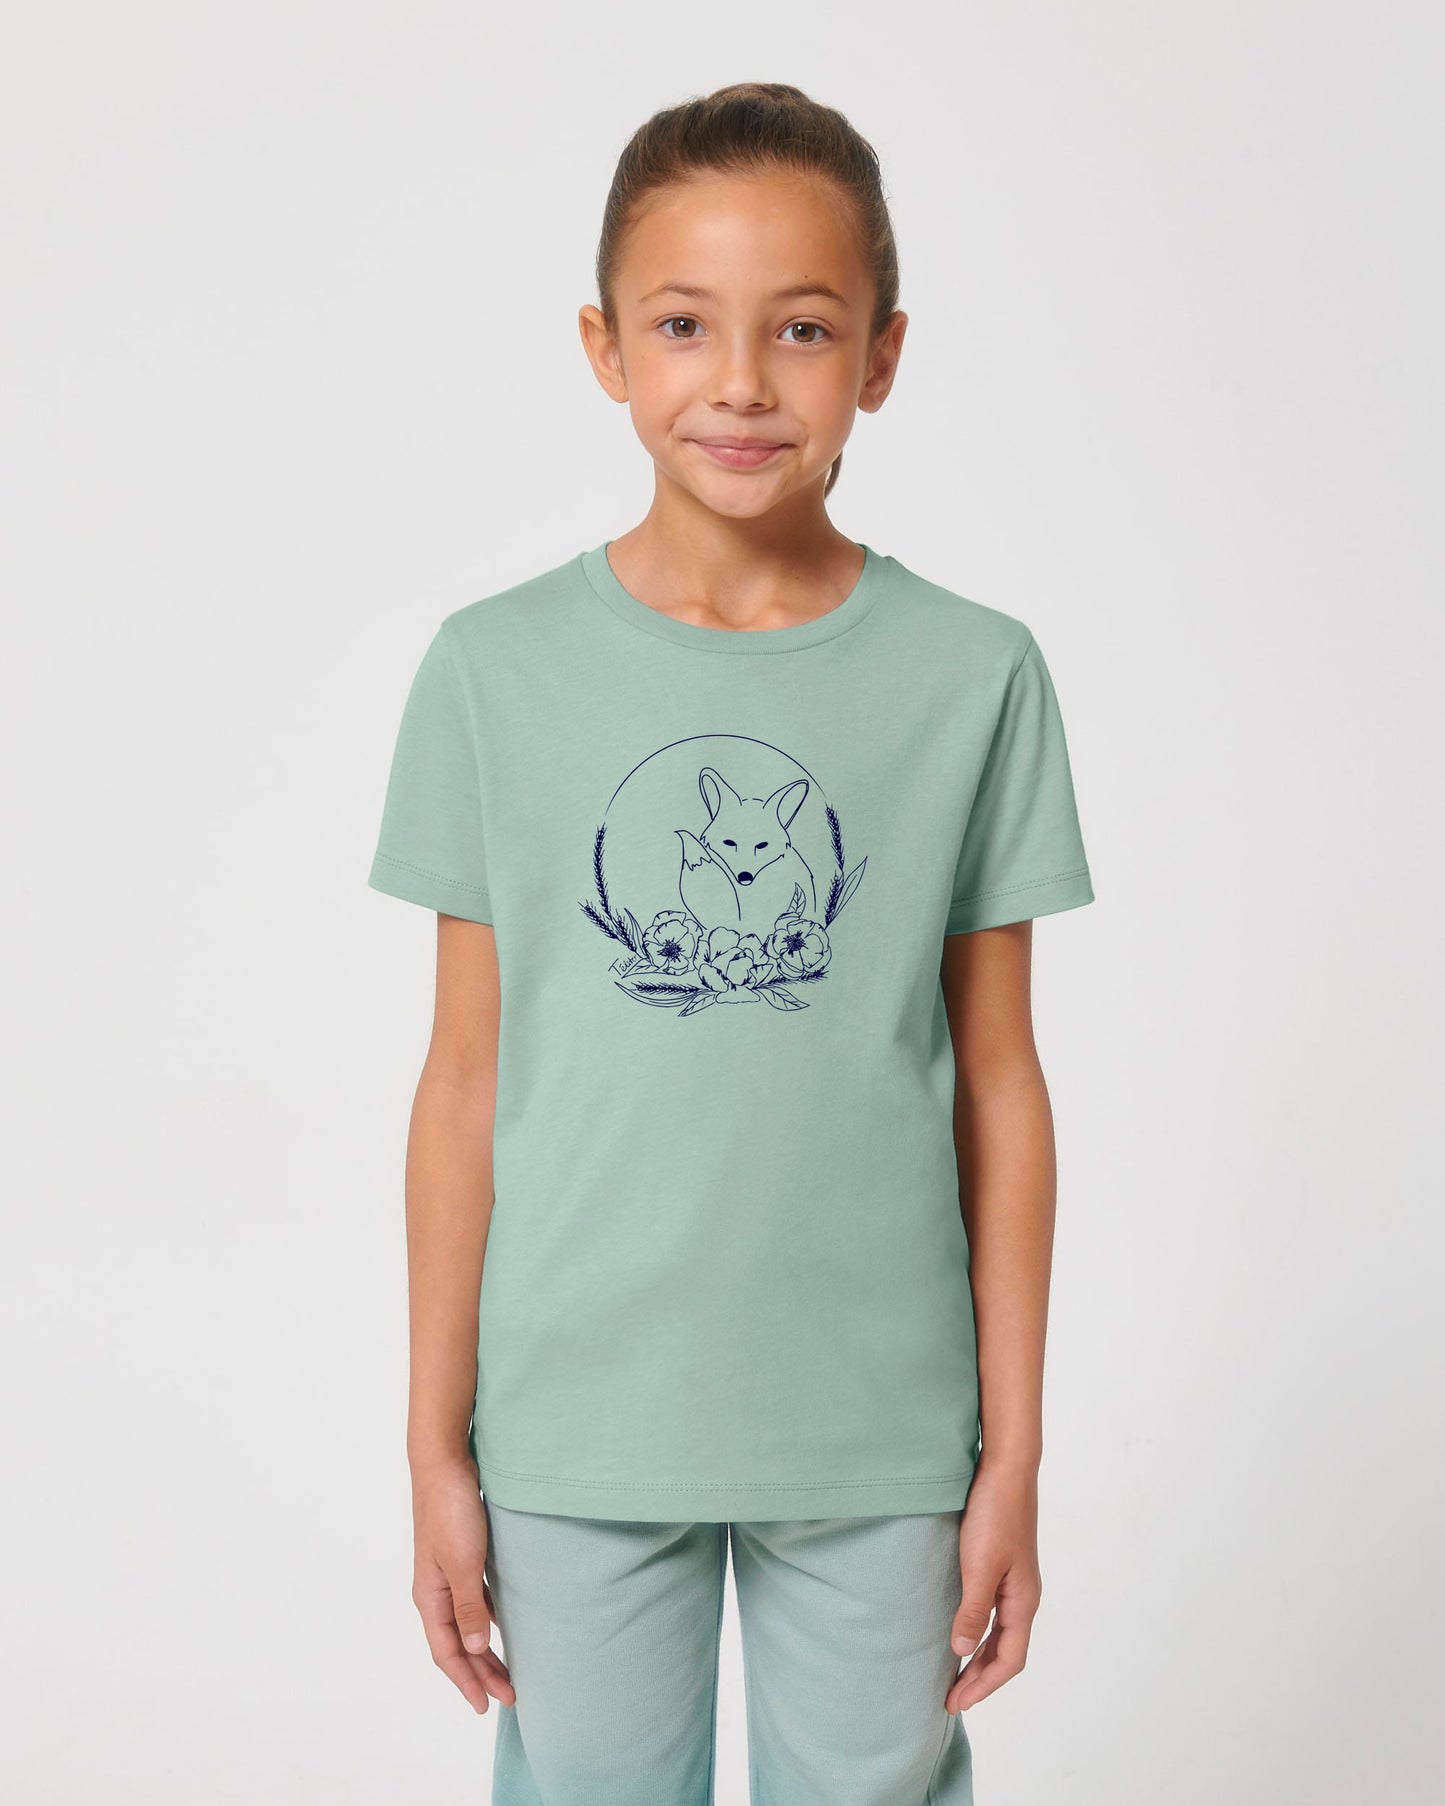 T-shirt Enfant - Renard